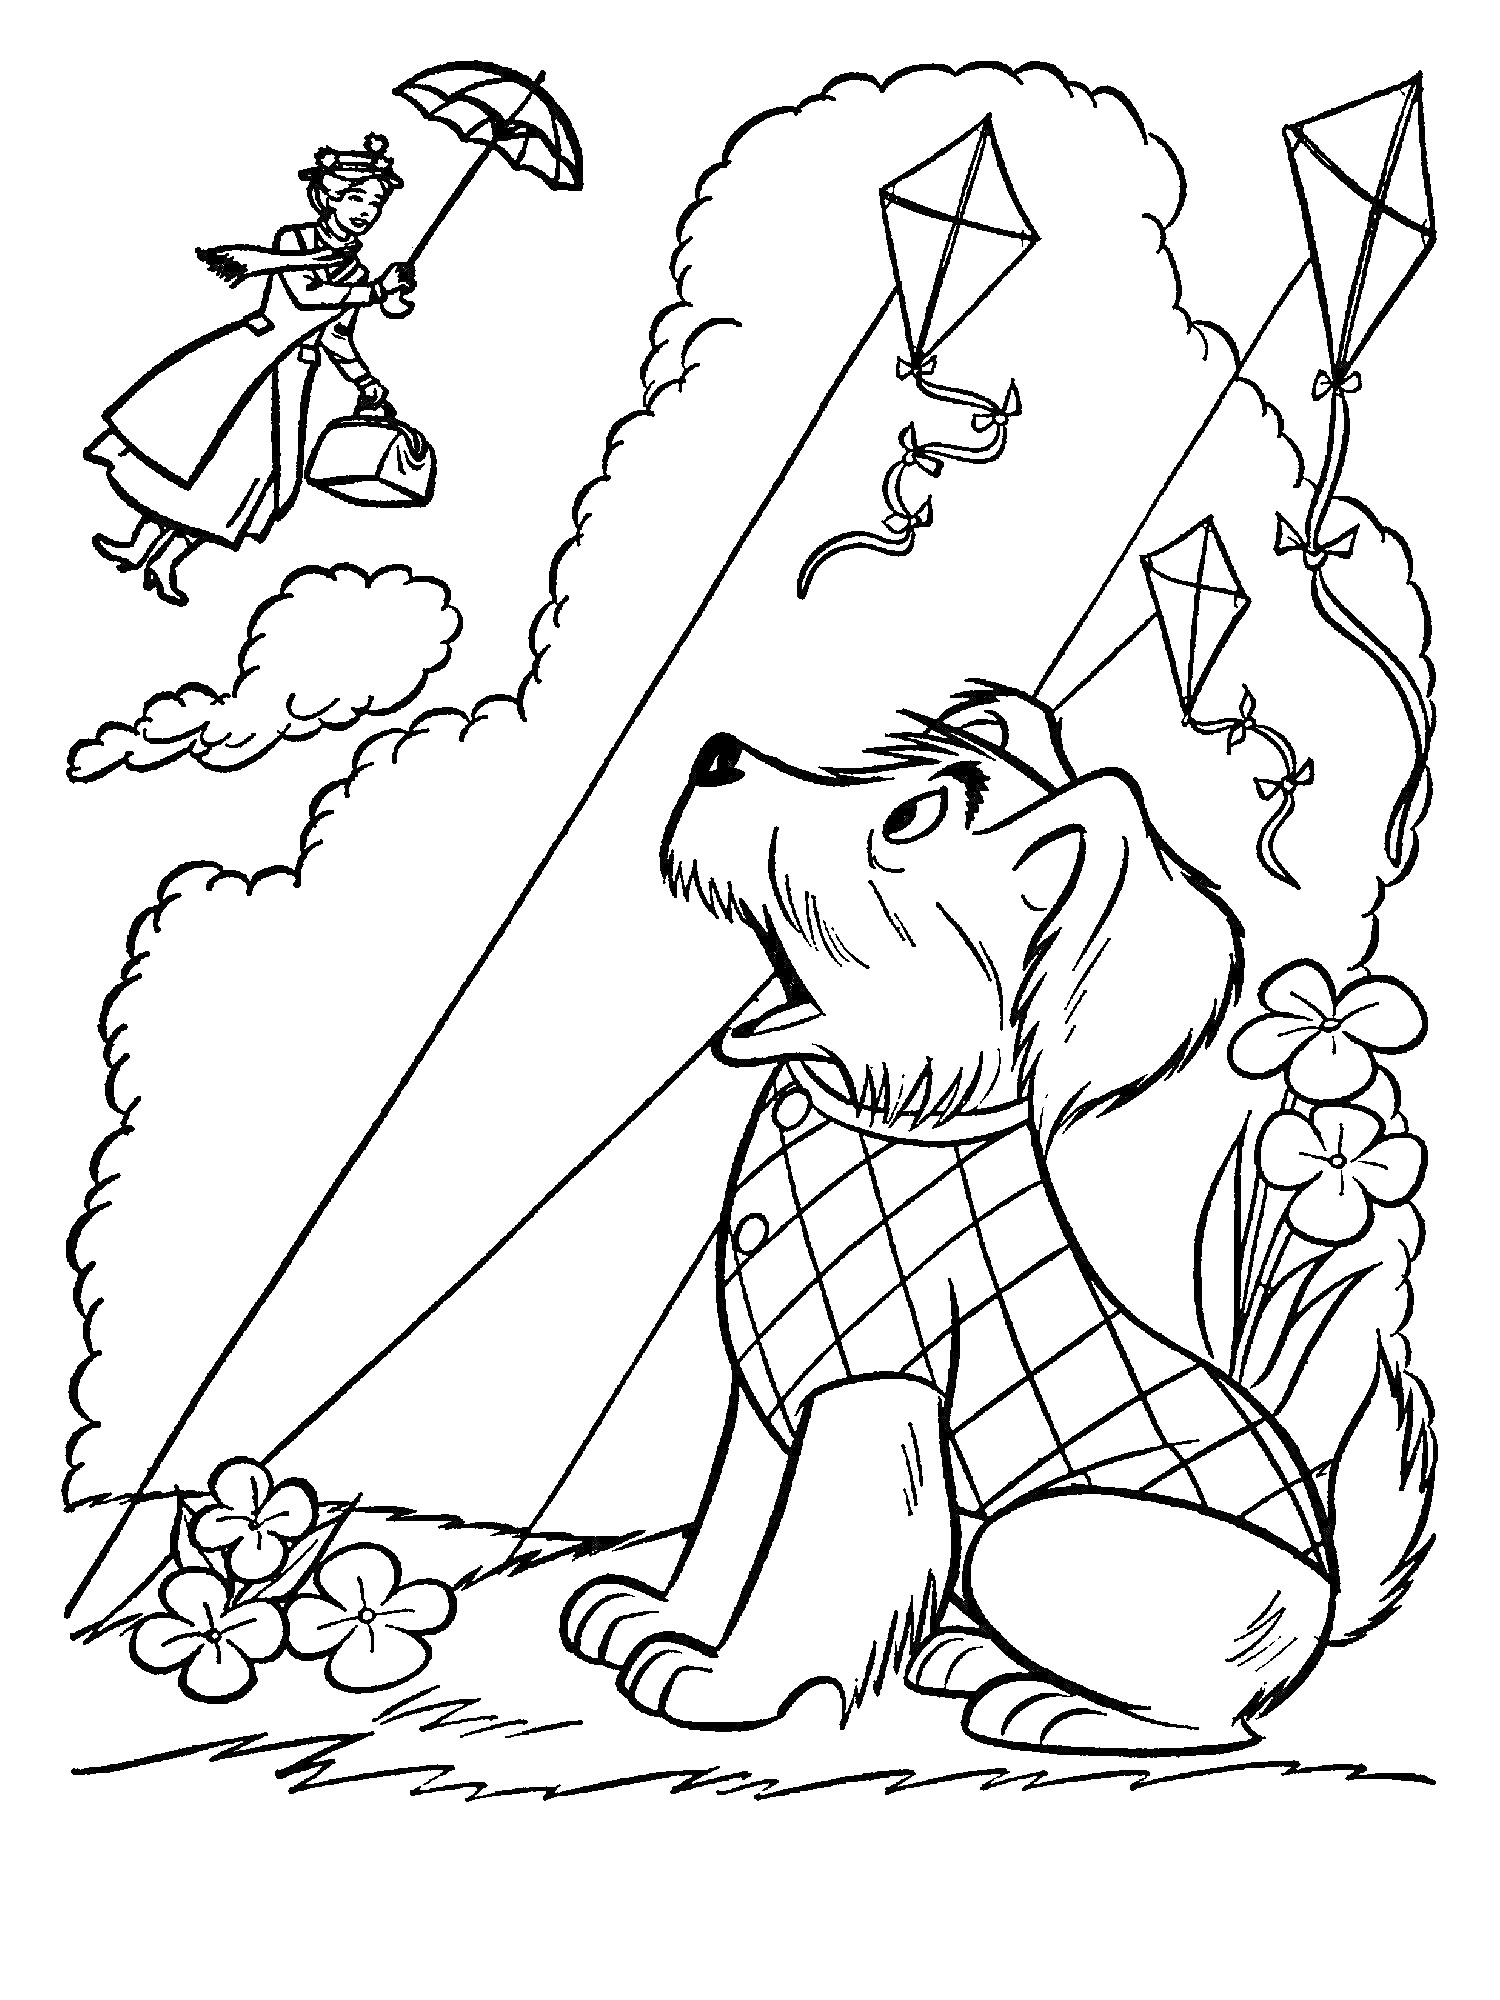 Раскраска Мэри Поппинс летит с зонтом над собакой в клетчатом свитере, которая сидит на траве среди цветов и смотрит на воздушных змеев.